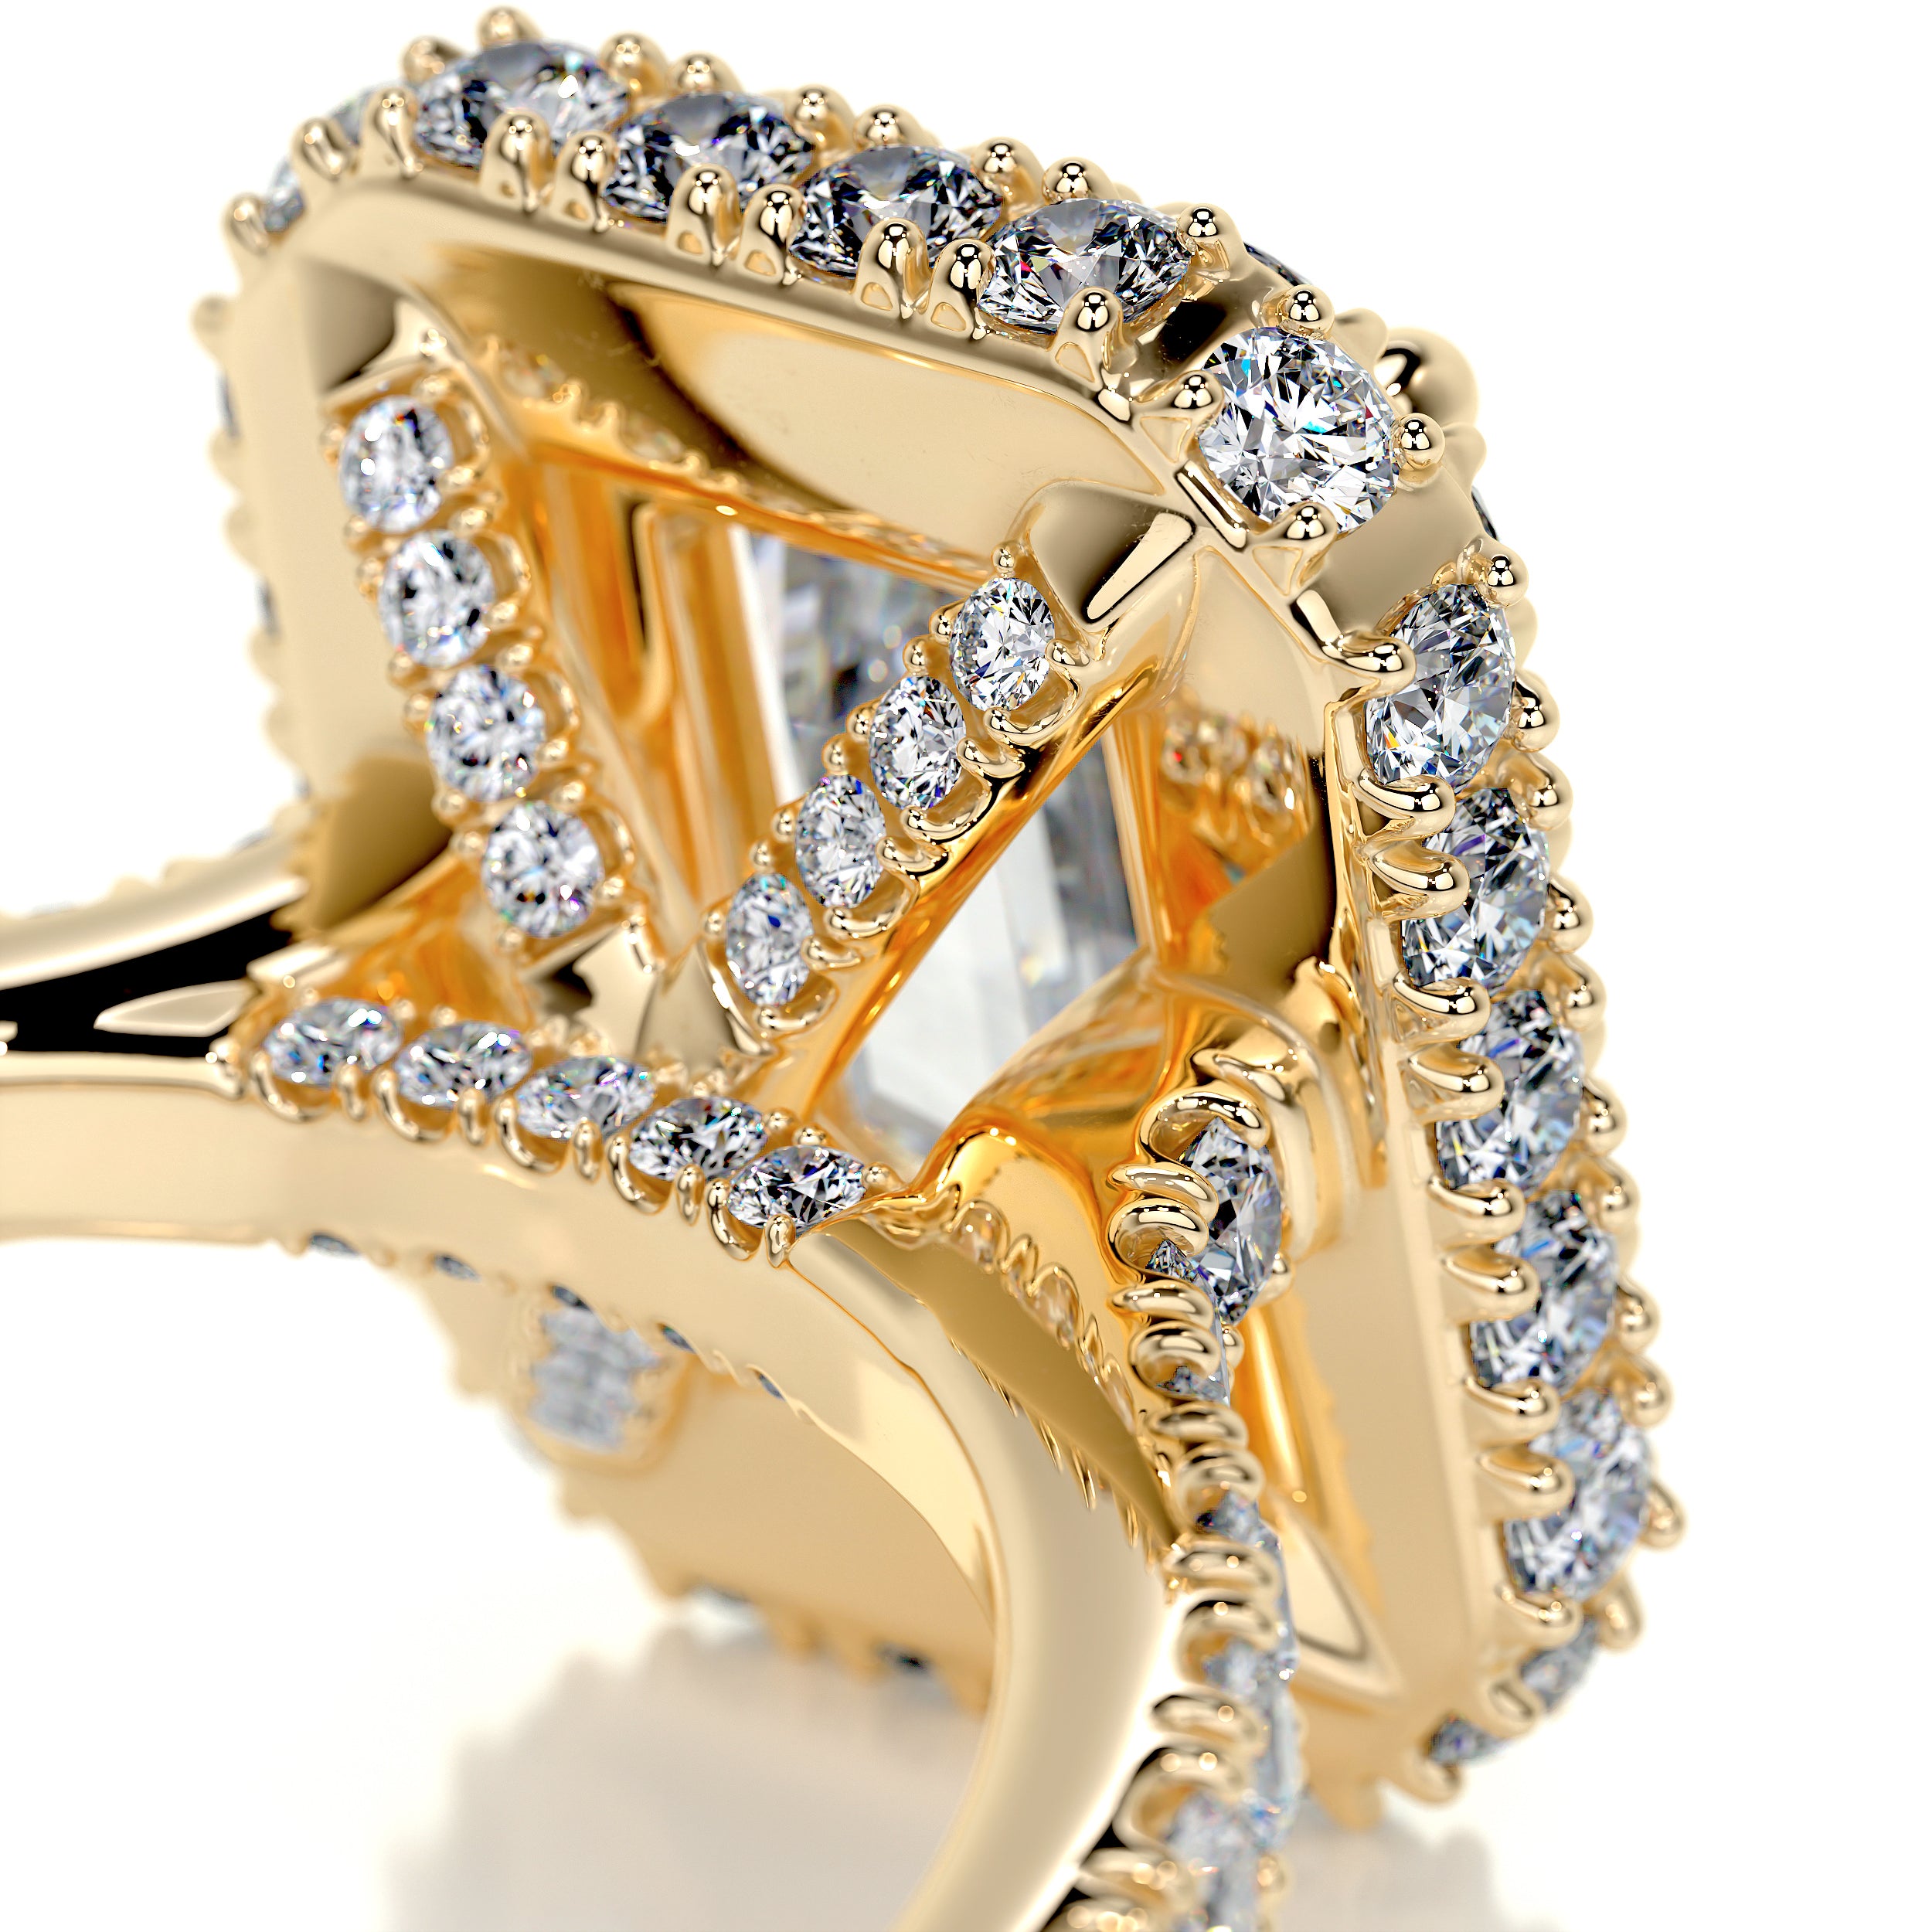 Lana Moissanite & Diamonds Ring   (2.5 Carat) -18K Yellow Gold